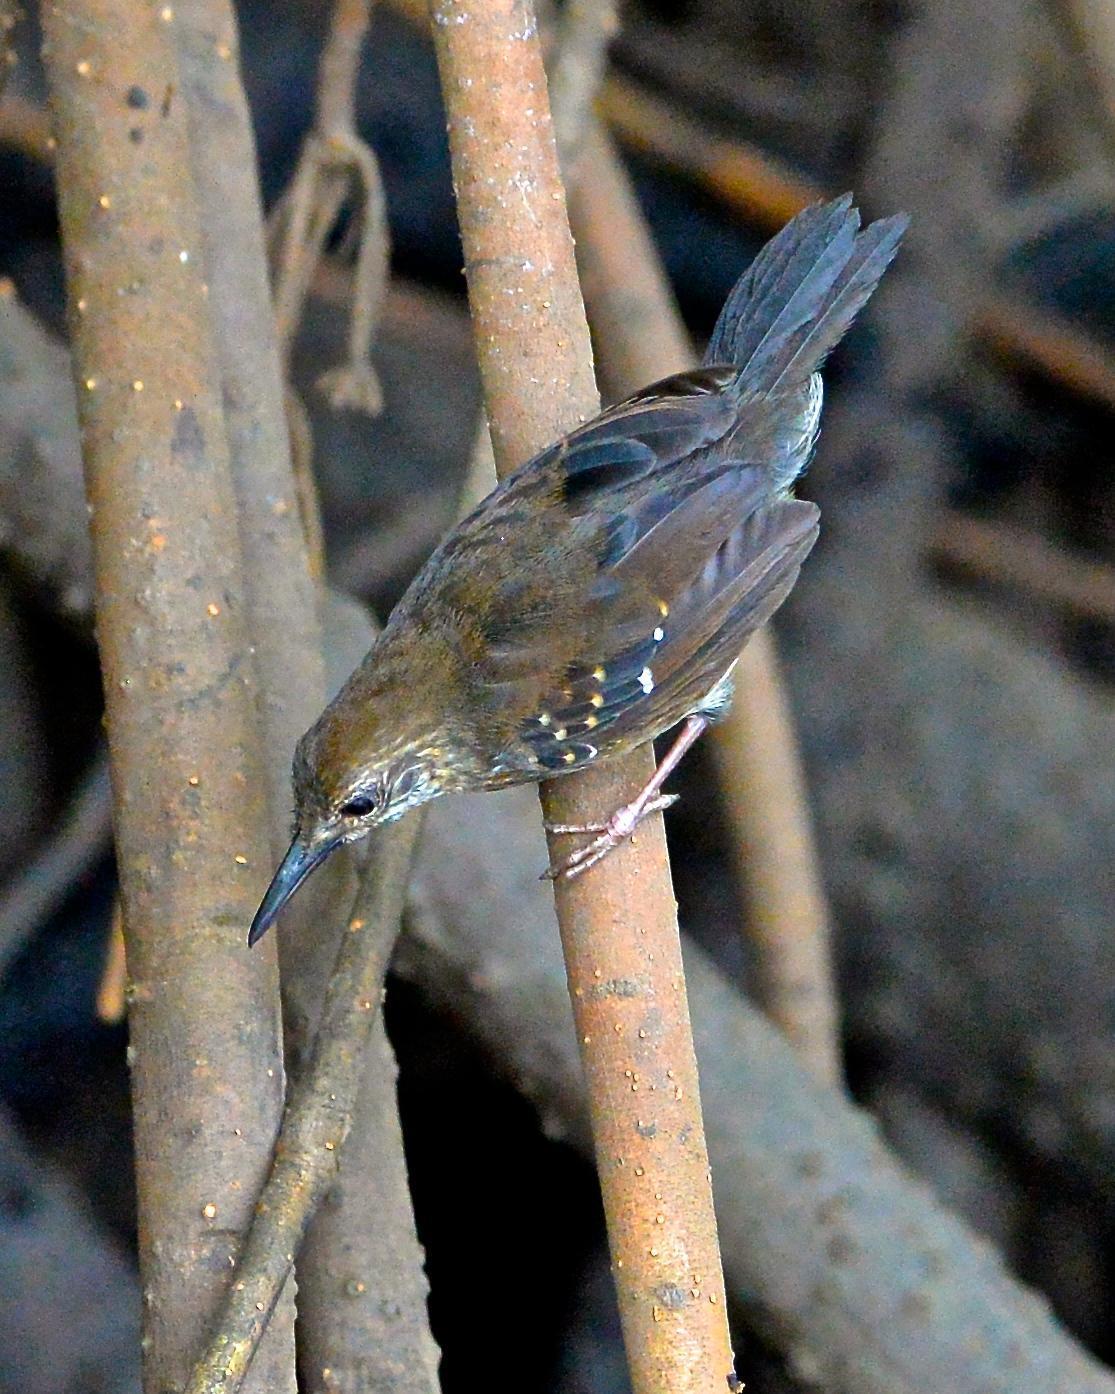 Silvered Antbird Photo by Gerald Friesen